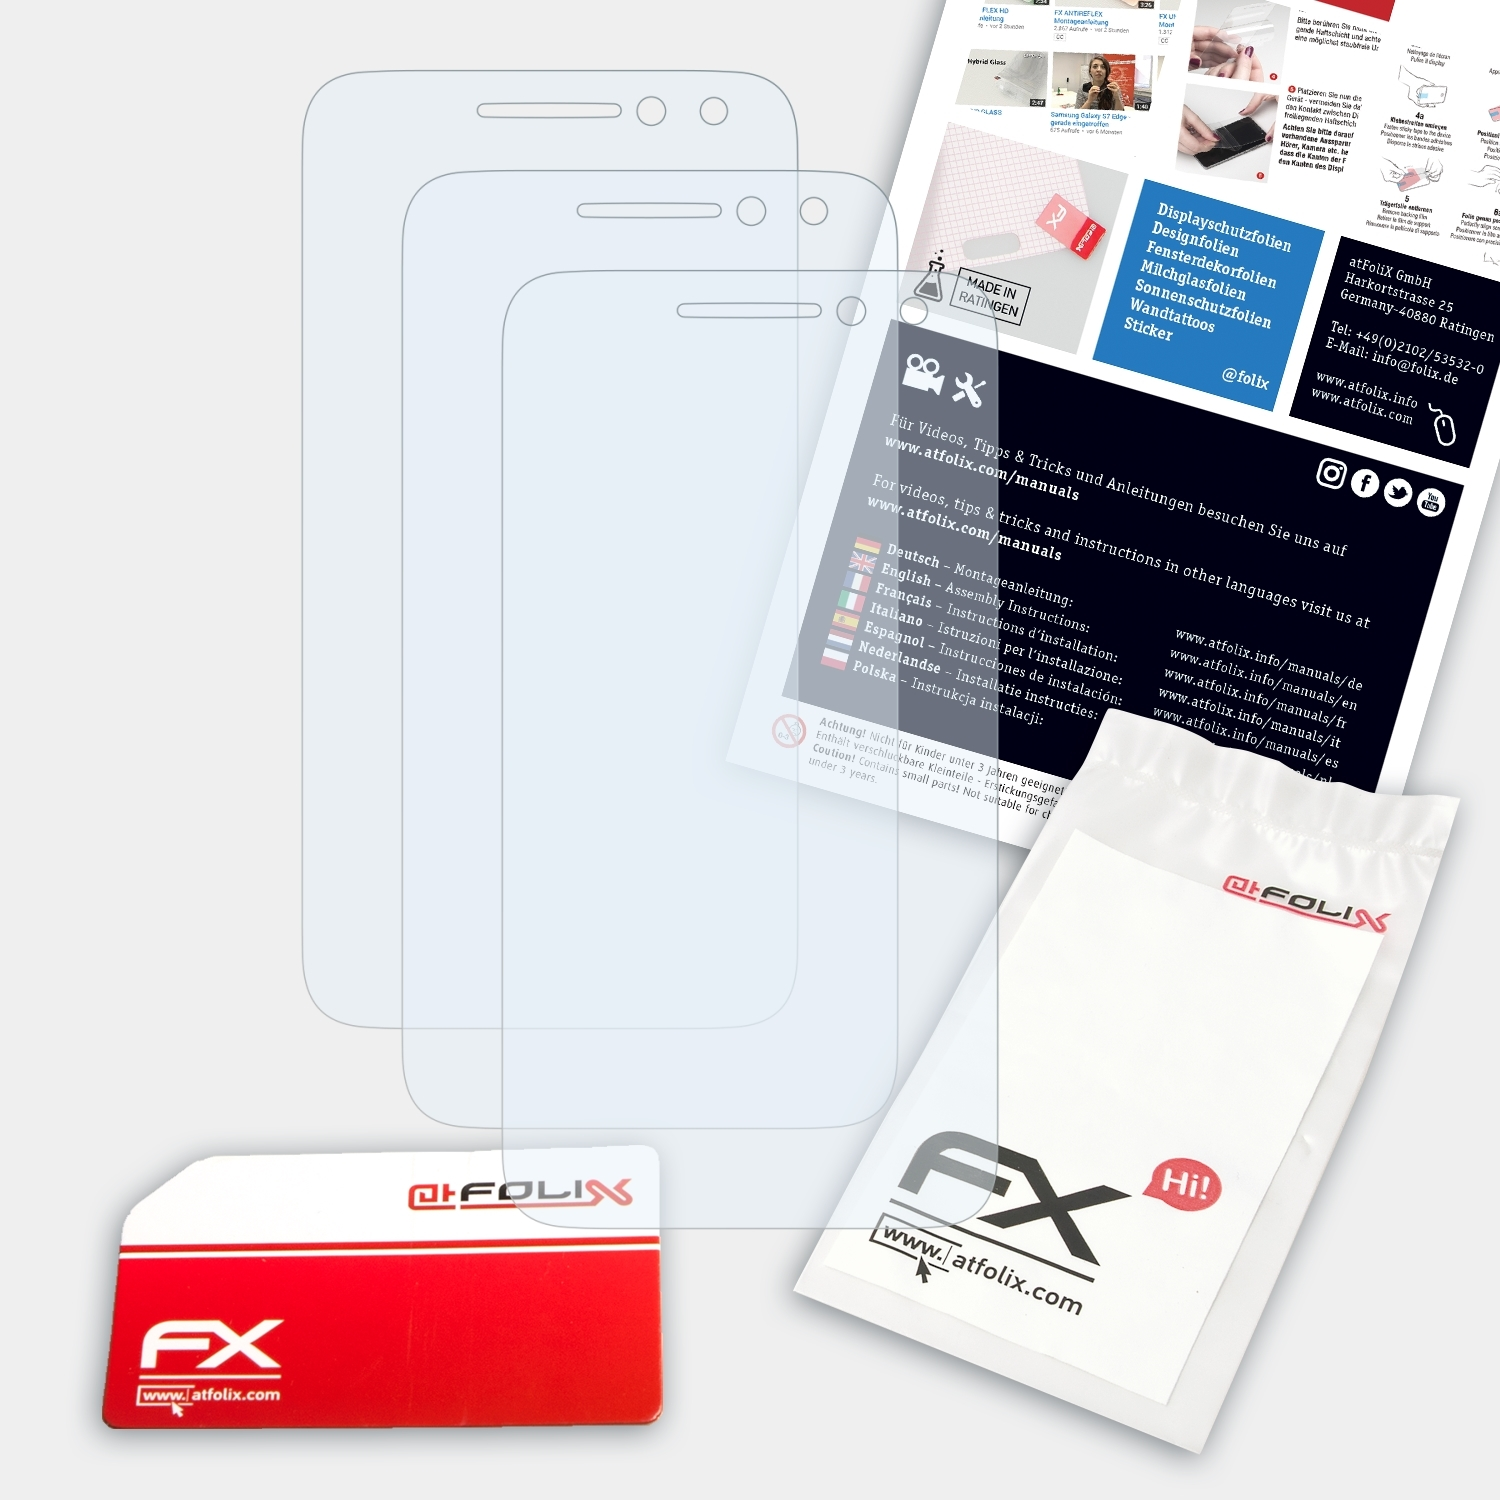 One Touch FX-Clear 4 3x Displayschutz(für (4)) Alcatel Pixi ATFOLIX